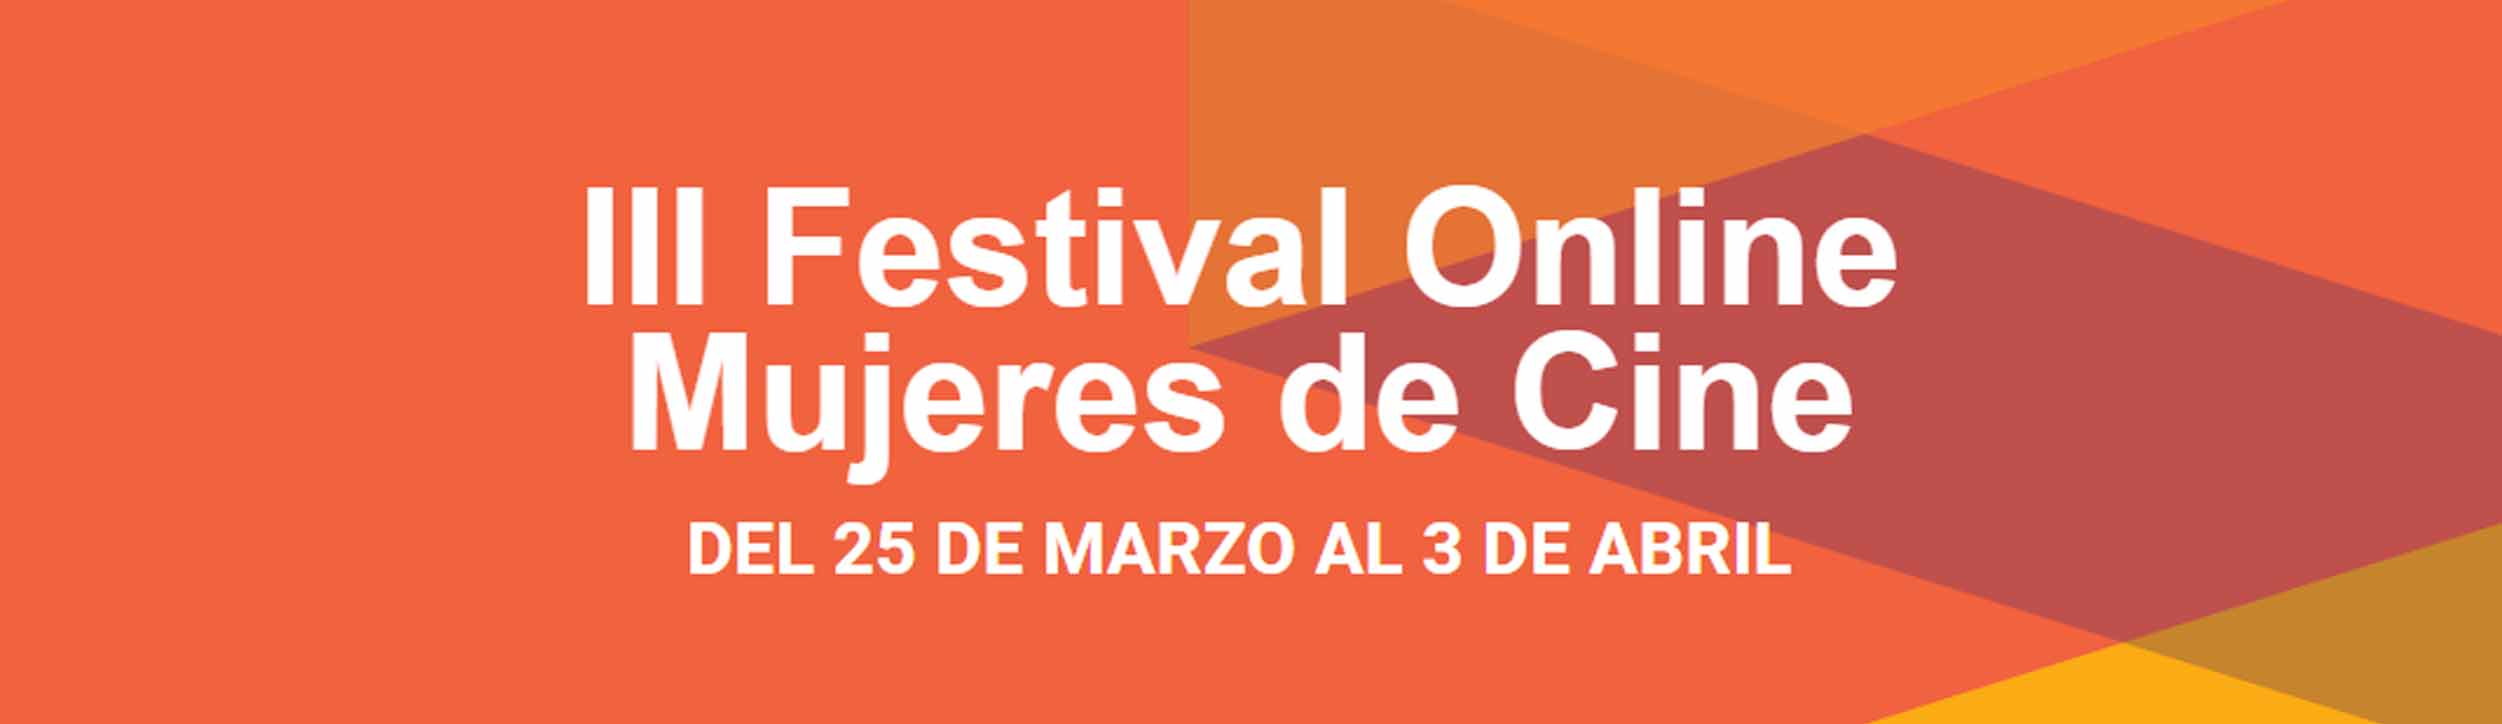 III Festival Online Mujeres de Cine